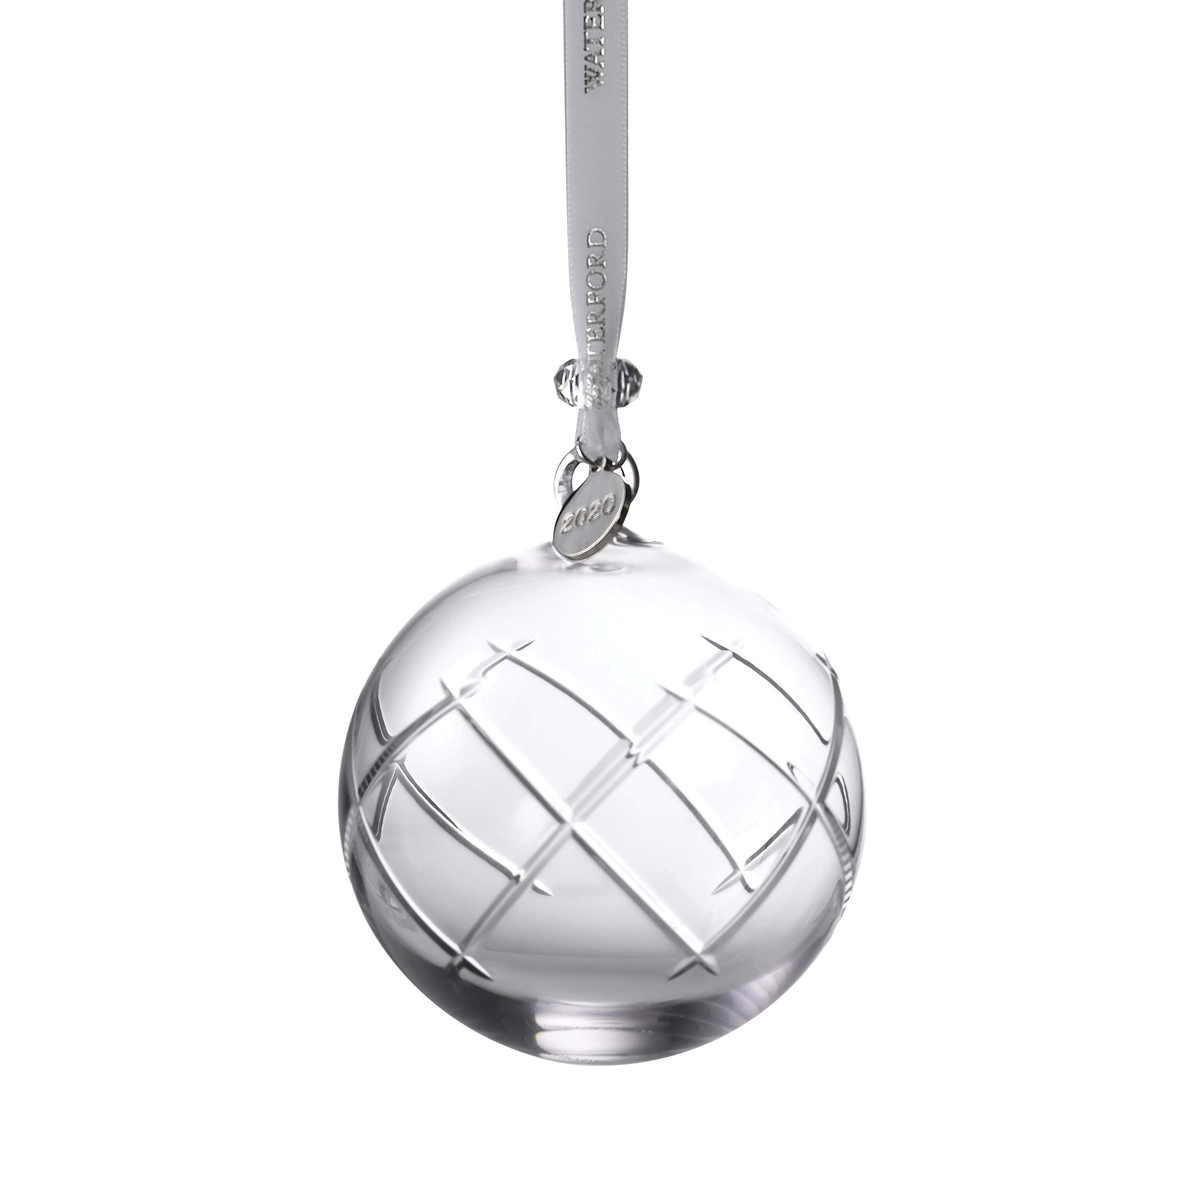 Waterford 2020 Olann Ball Ornament